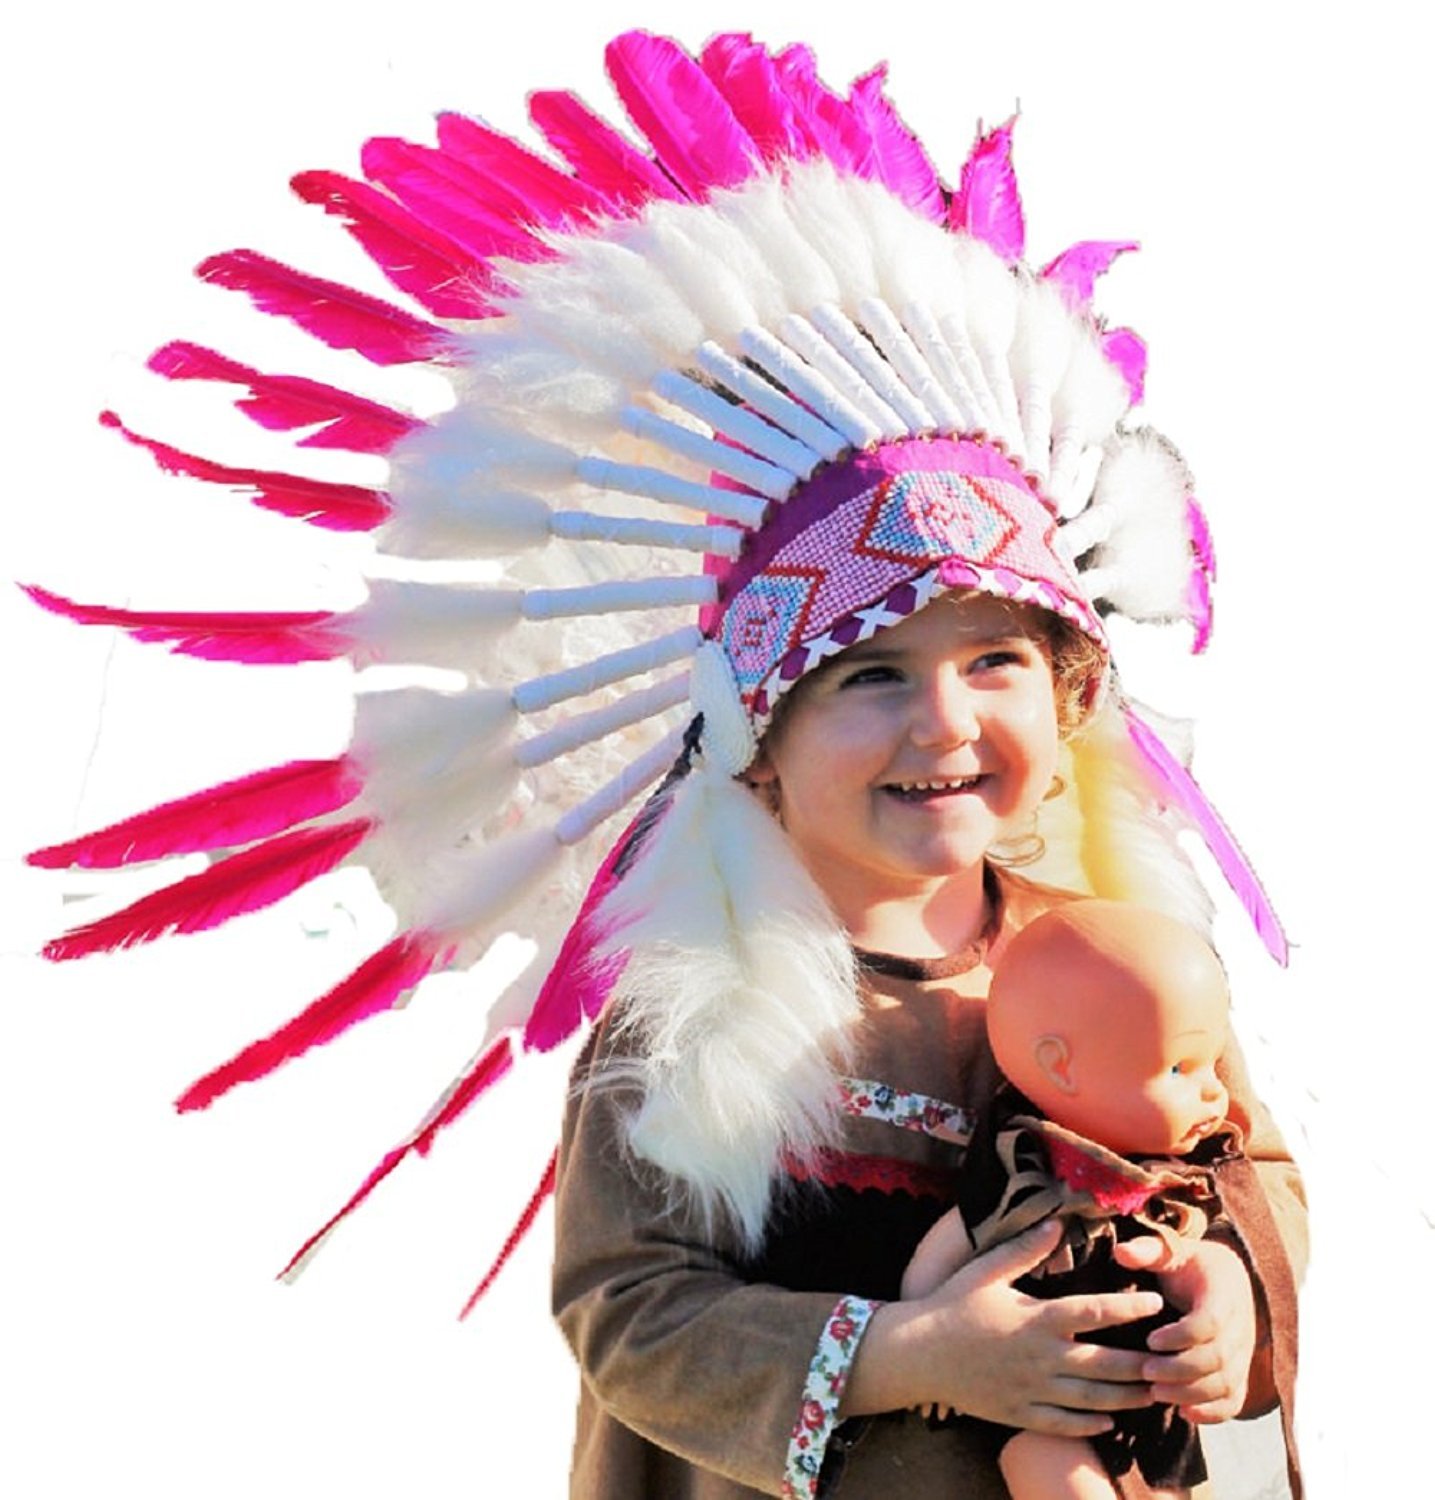 KARMABCN N11- Von 2-5 Jahren Kind/Kind: 3 Farben Indian Headdress 20,5 Zoll. - 52 cm (PINK SWAN)